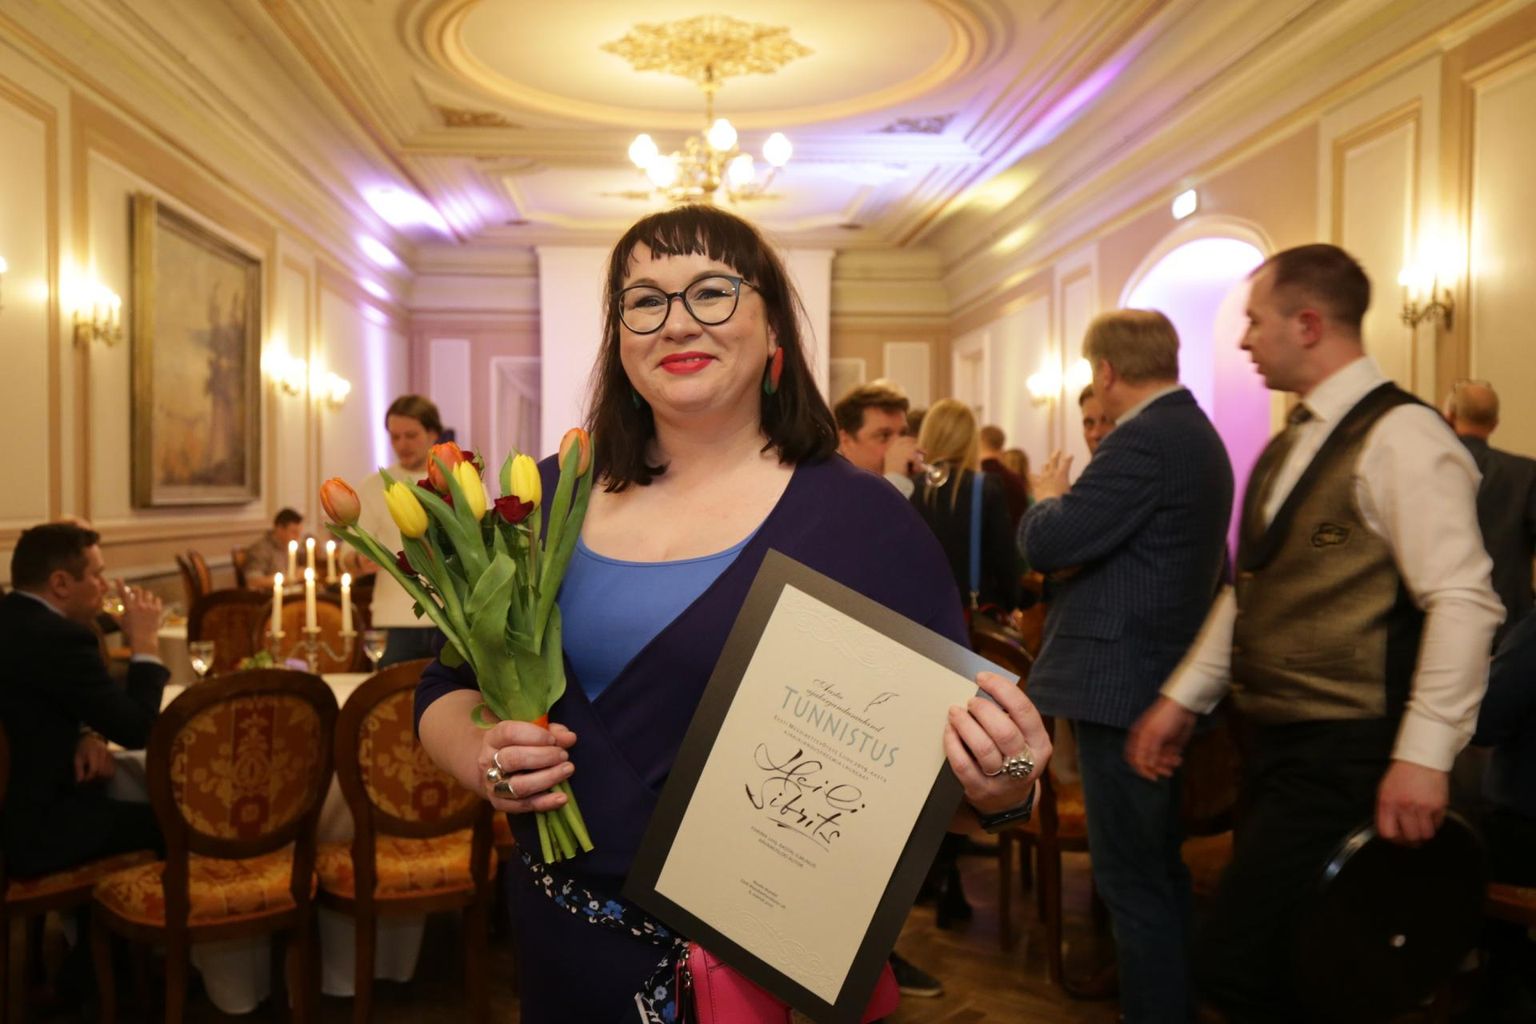 Postimehe kultuurijuht Heili Sibrits sai preemia Eesti teatrimaastiku kritiseeriva arvamusartikli eest. 